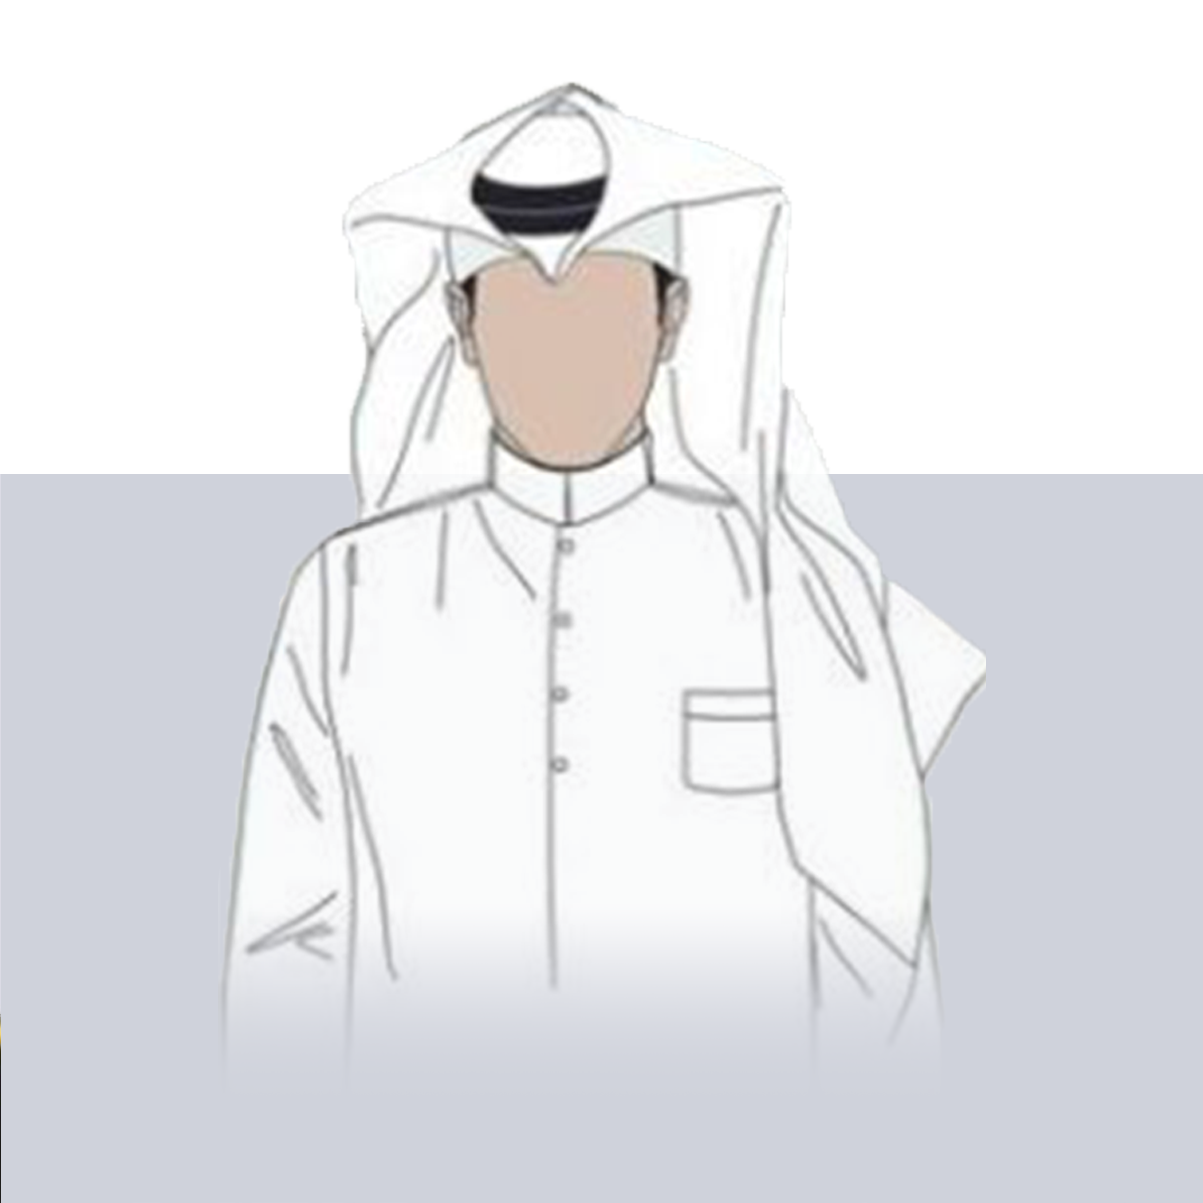 Sheikh Mohammed Bin Abdulla Bin Mohammed Al Thani  